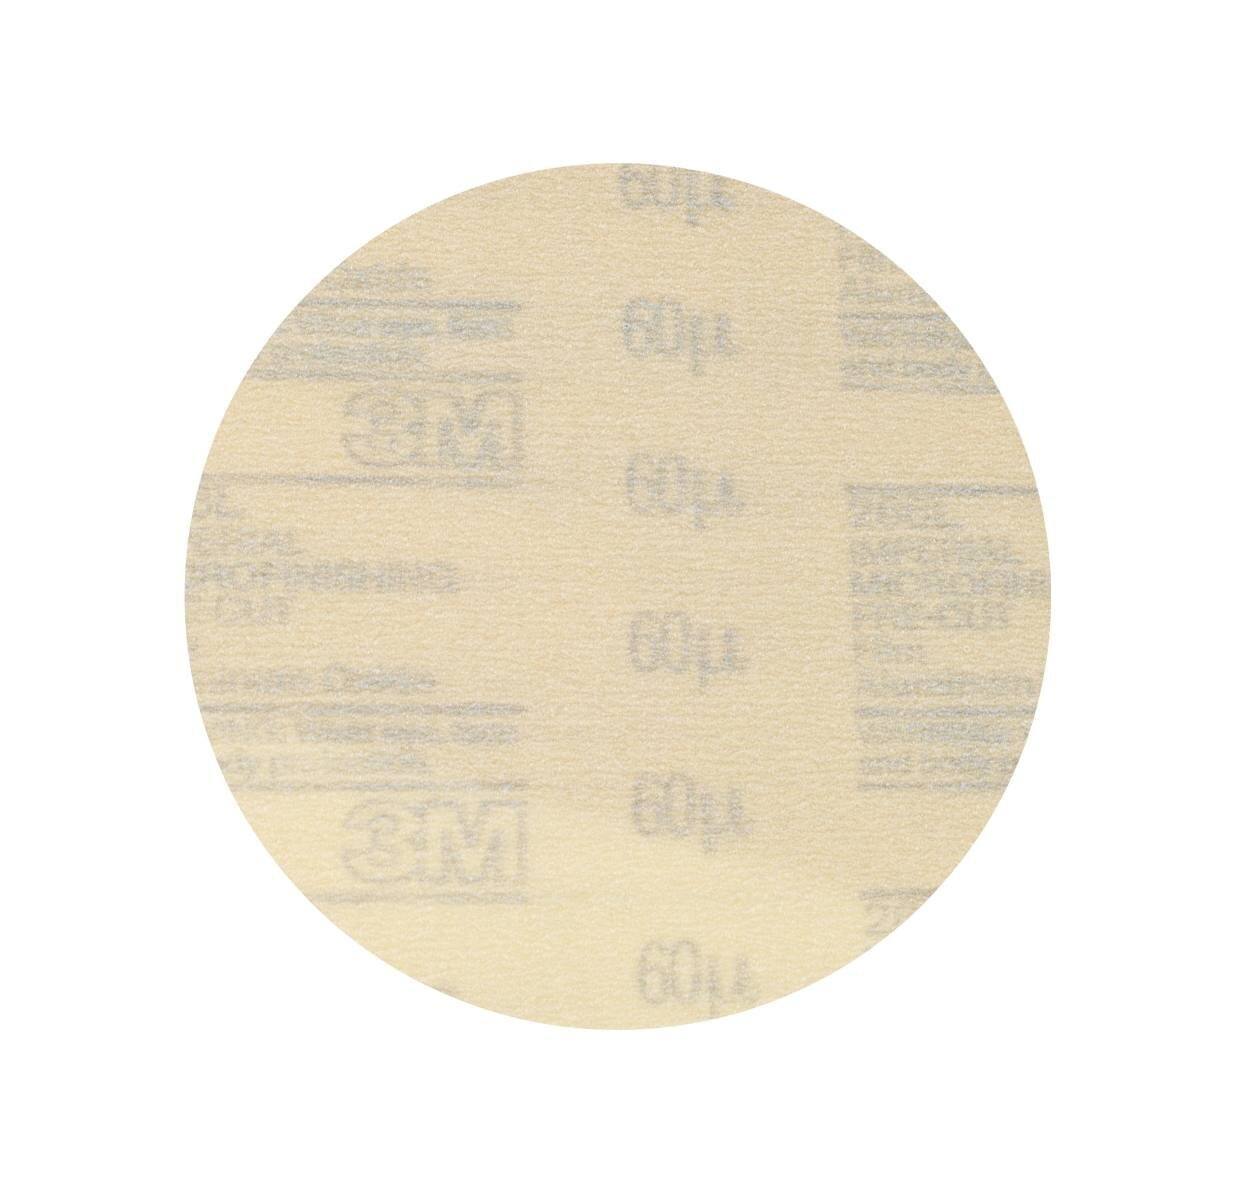 disco per microfinitura 3M Hookit con gancio e anello 266L, 150 mm, non perforato, 60 micron #00050